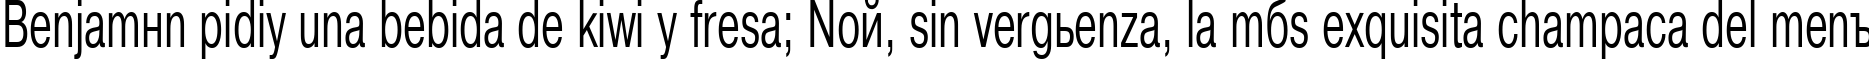 Пример написания шрифтом PragmaticaCTT61n текста на испанском